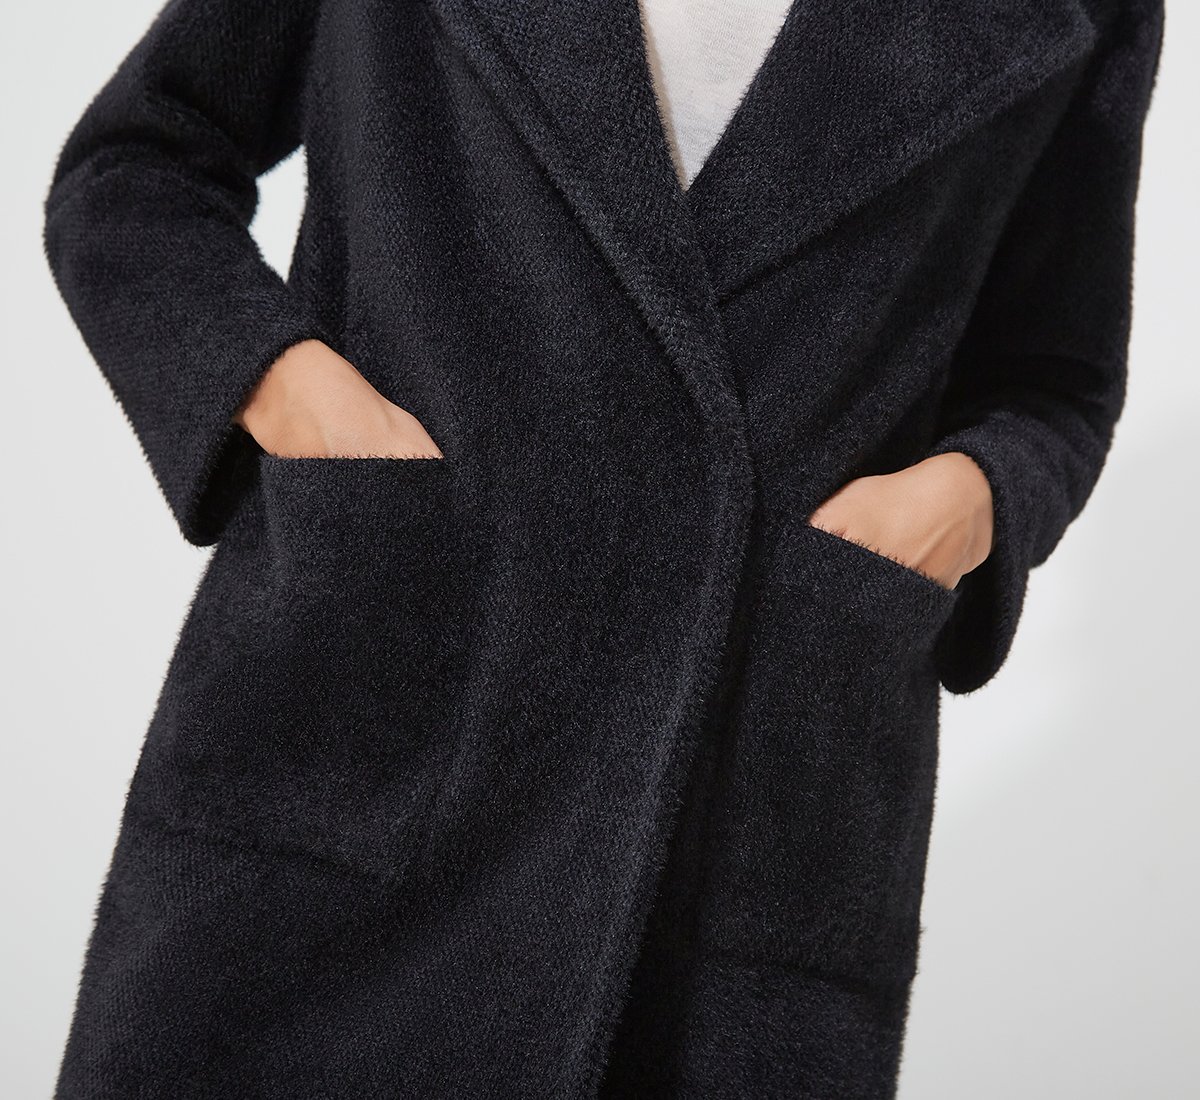 Fabi single-button coat